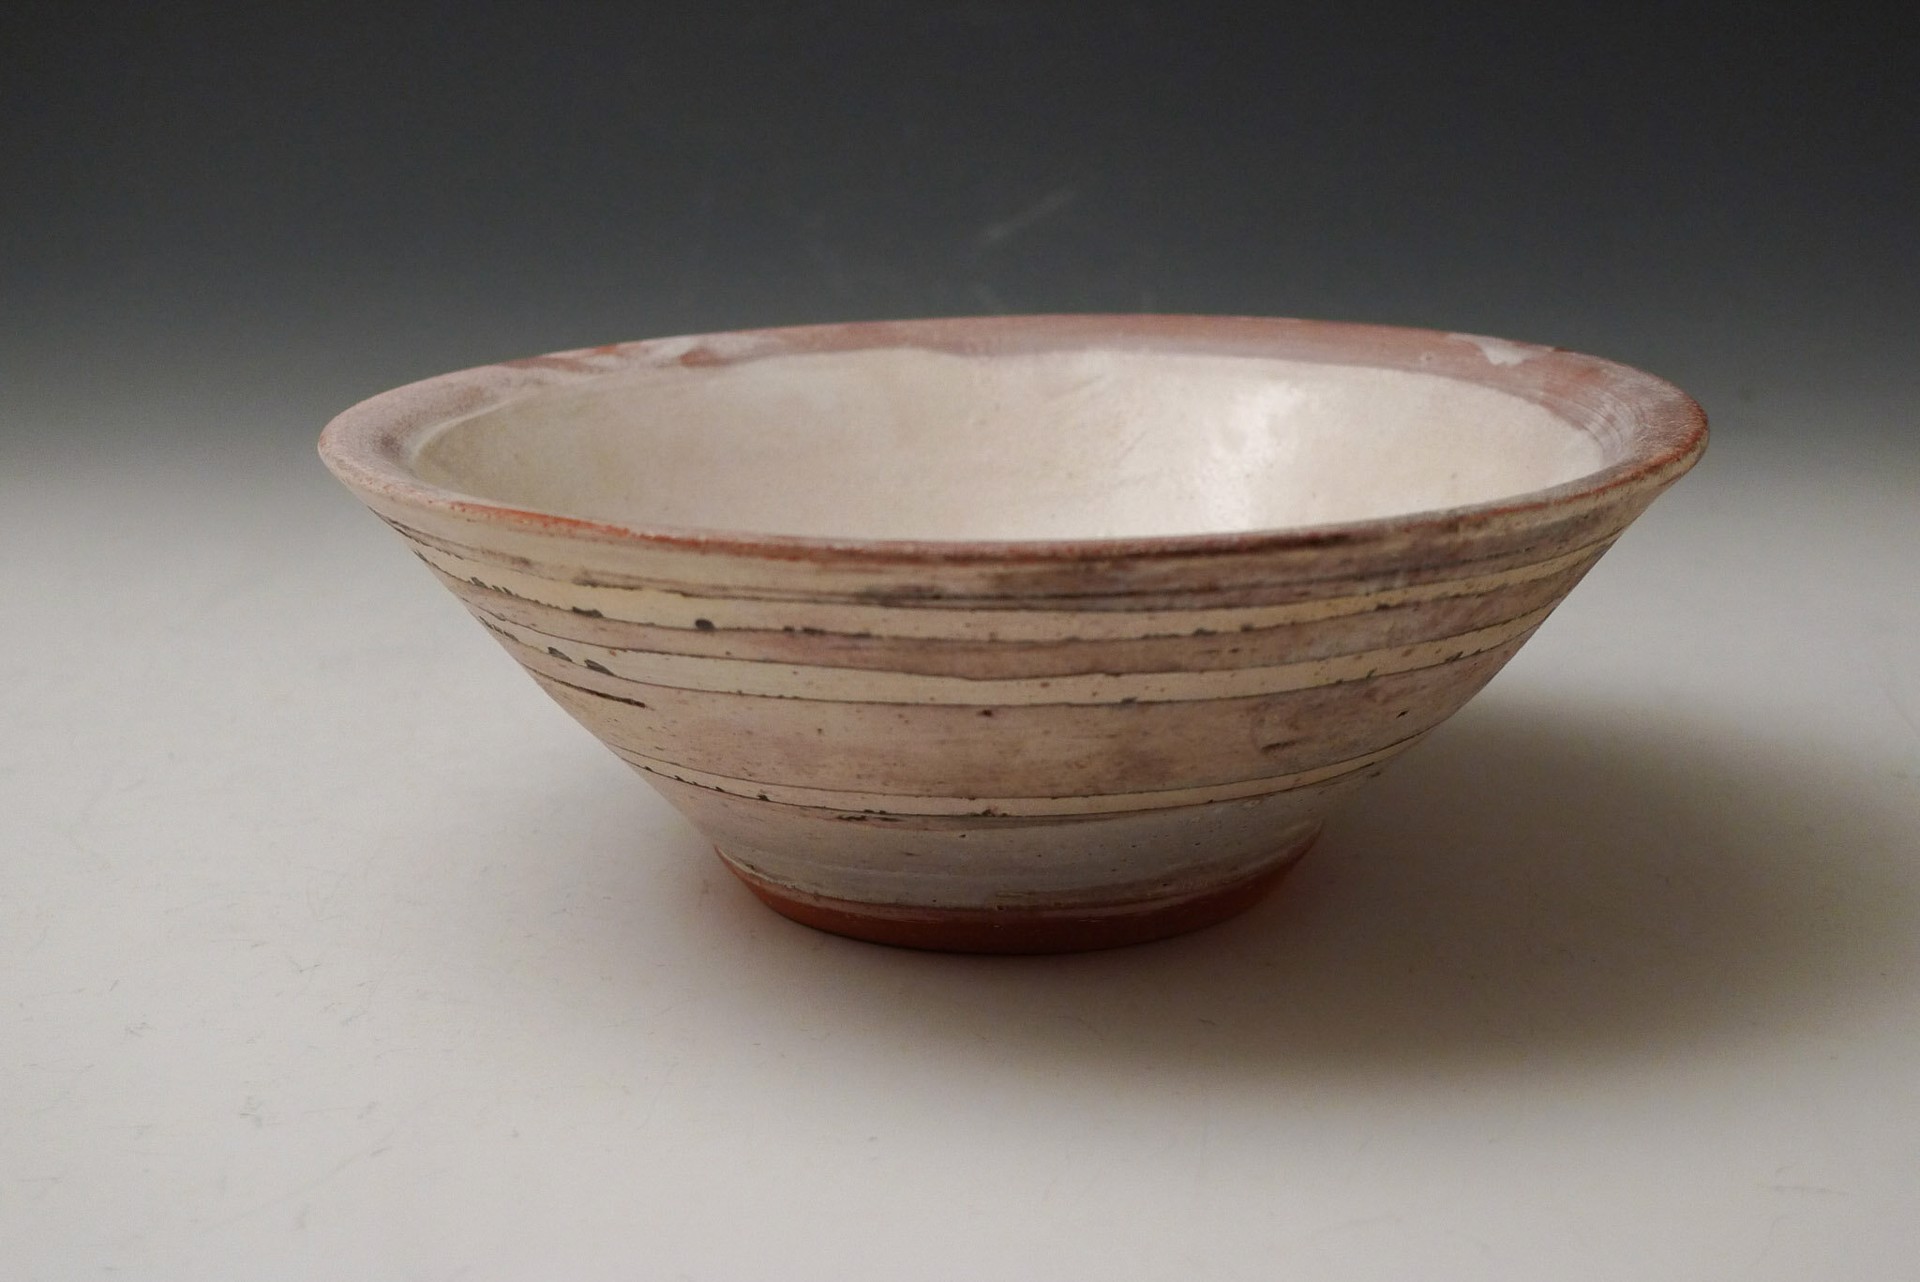 Bowl by Maggie Jaszczak